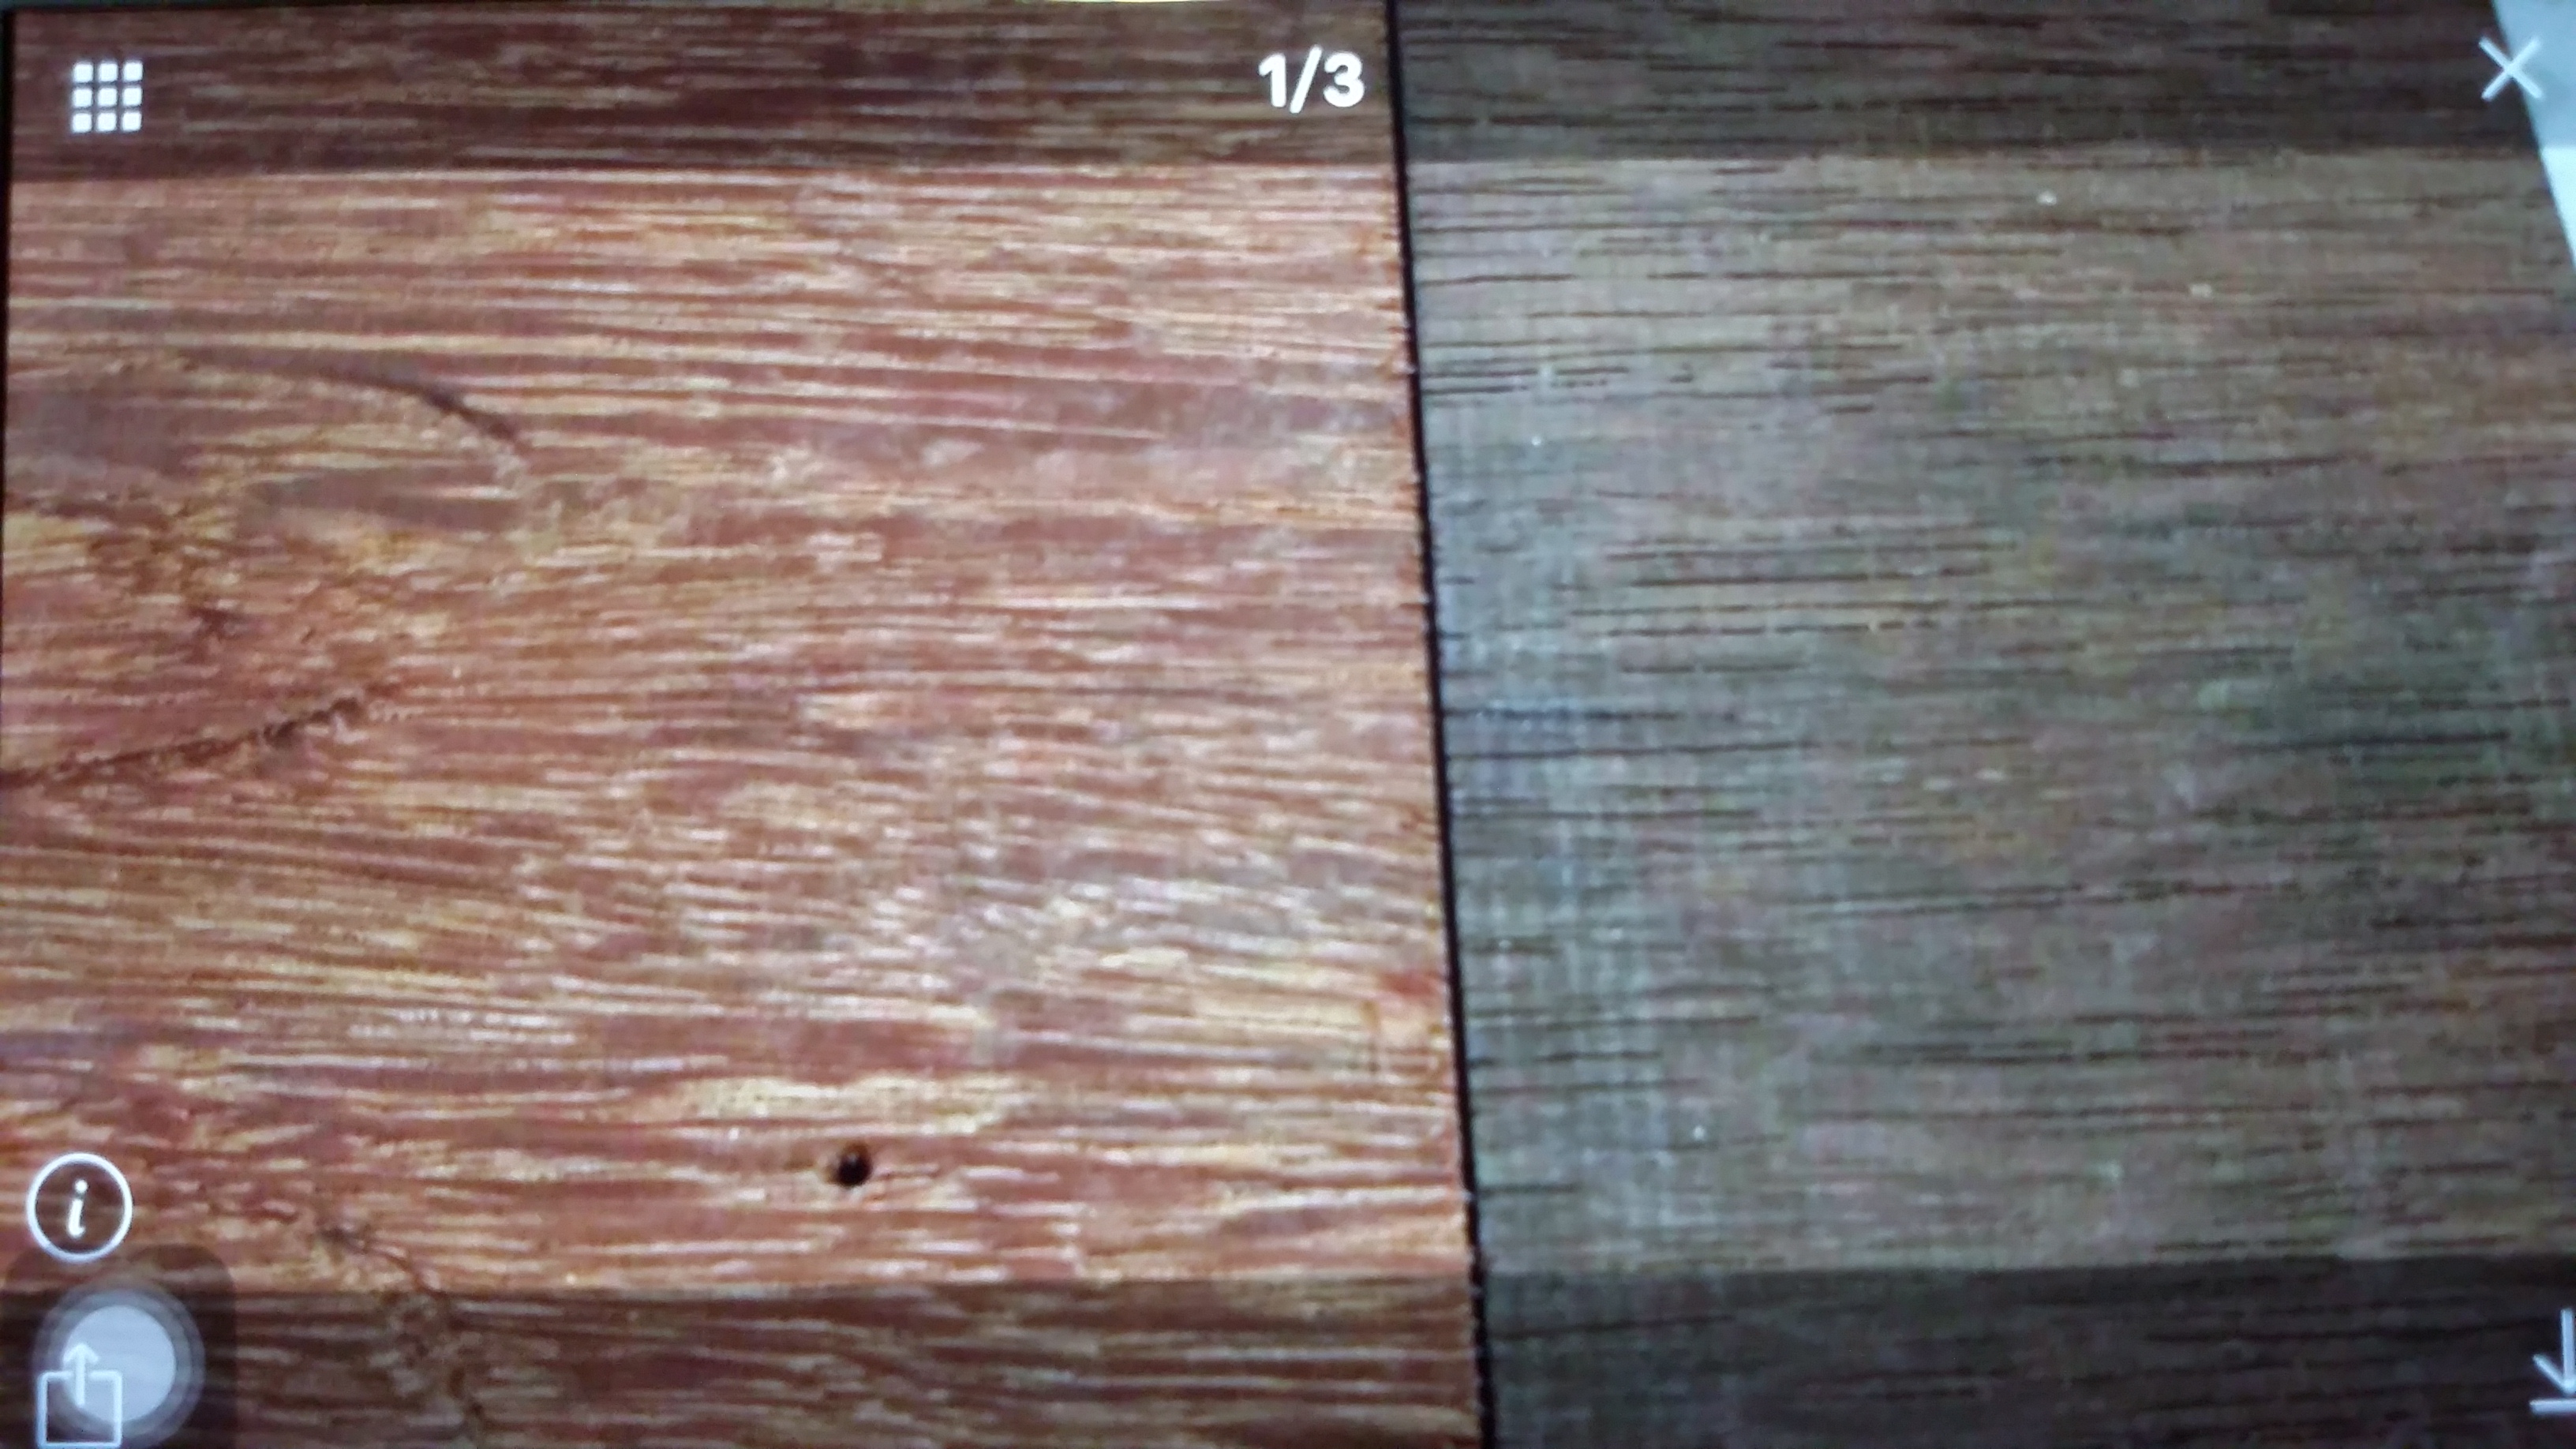 金鋼鐵木户外地板6尺x4.2x6分(以坪計算)